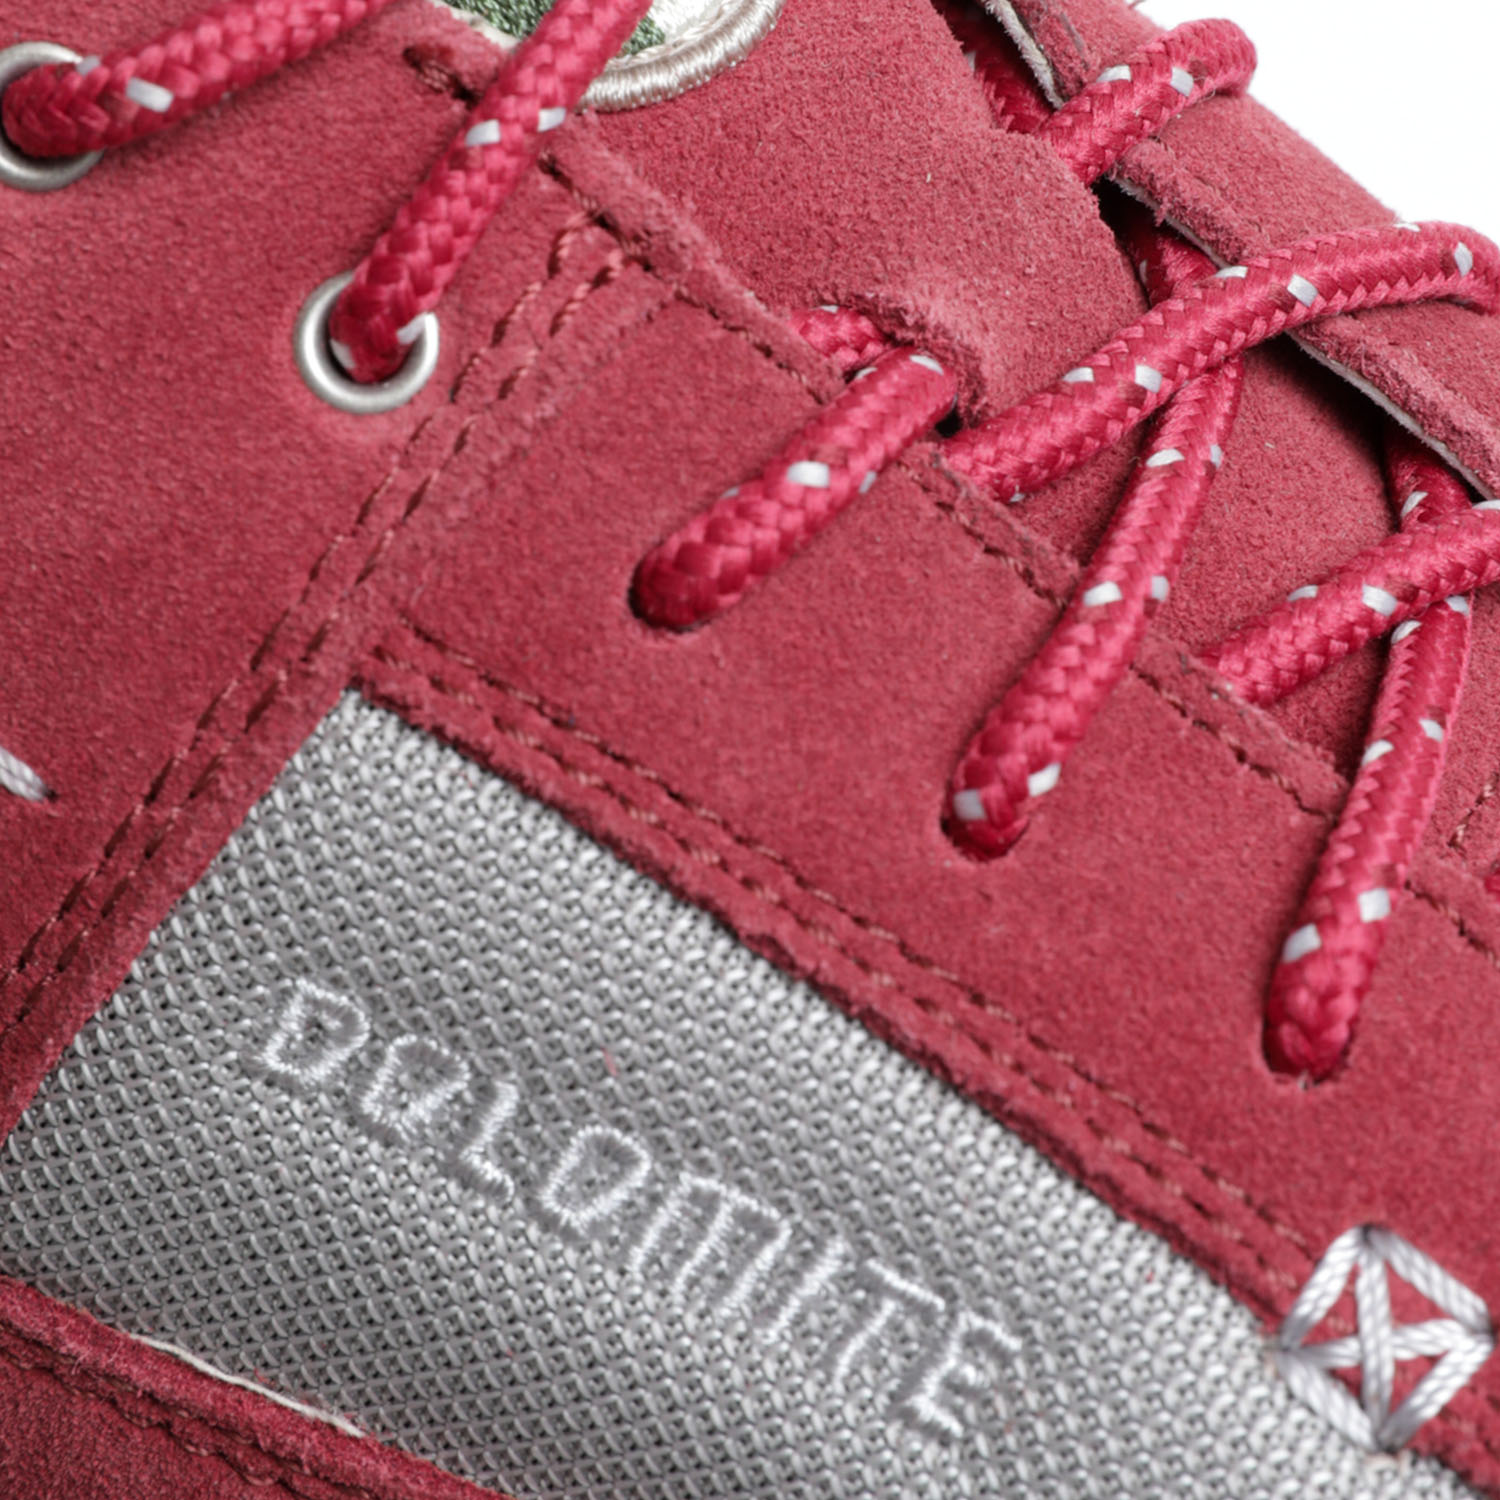 Ботинки Dolomite 54 Hike Low GTX W's Burgundy Red/Fuxia Pink